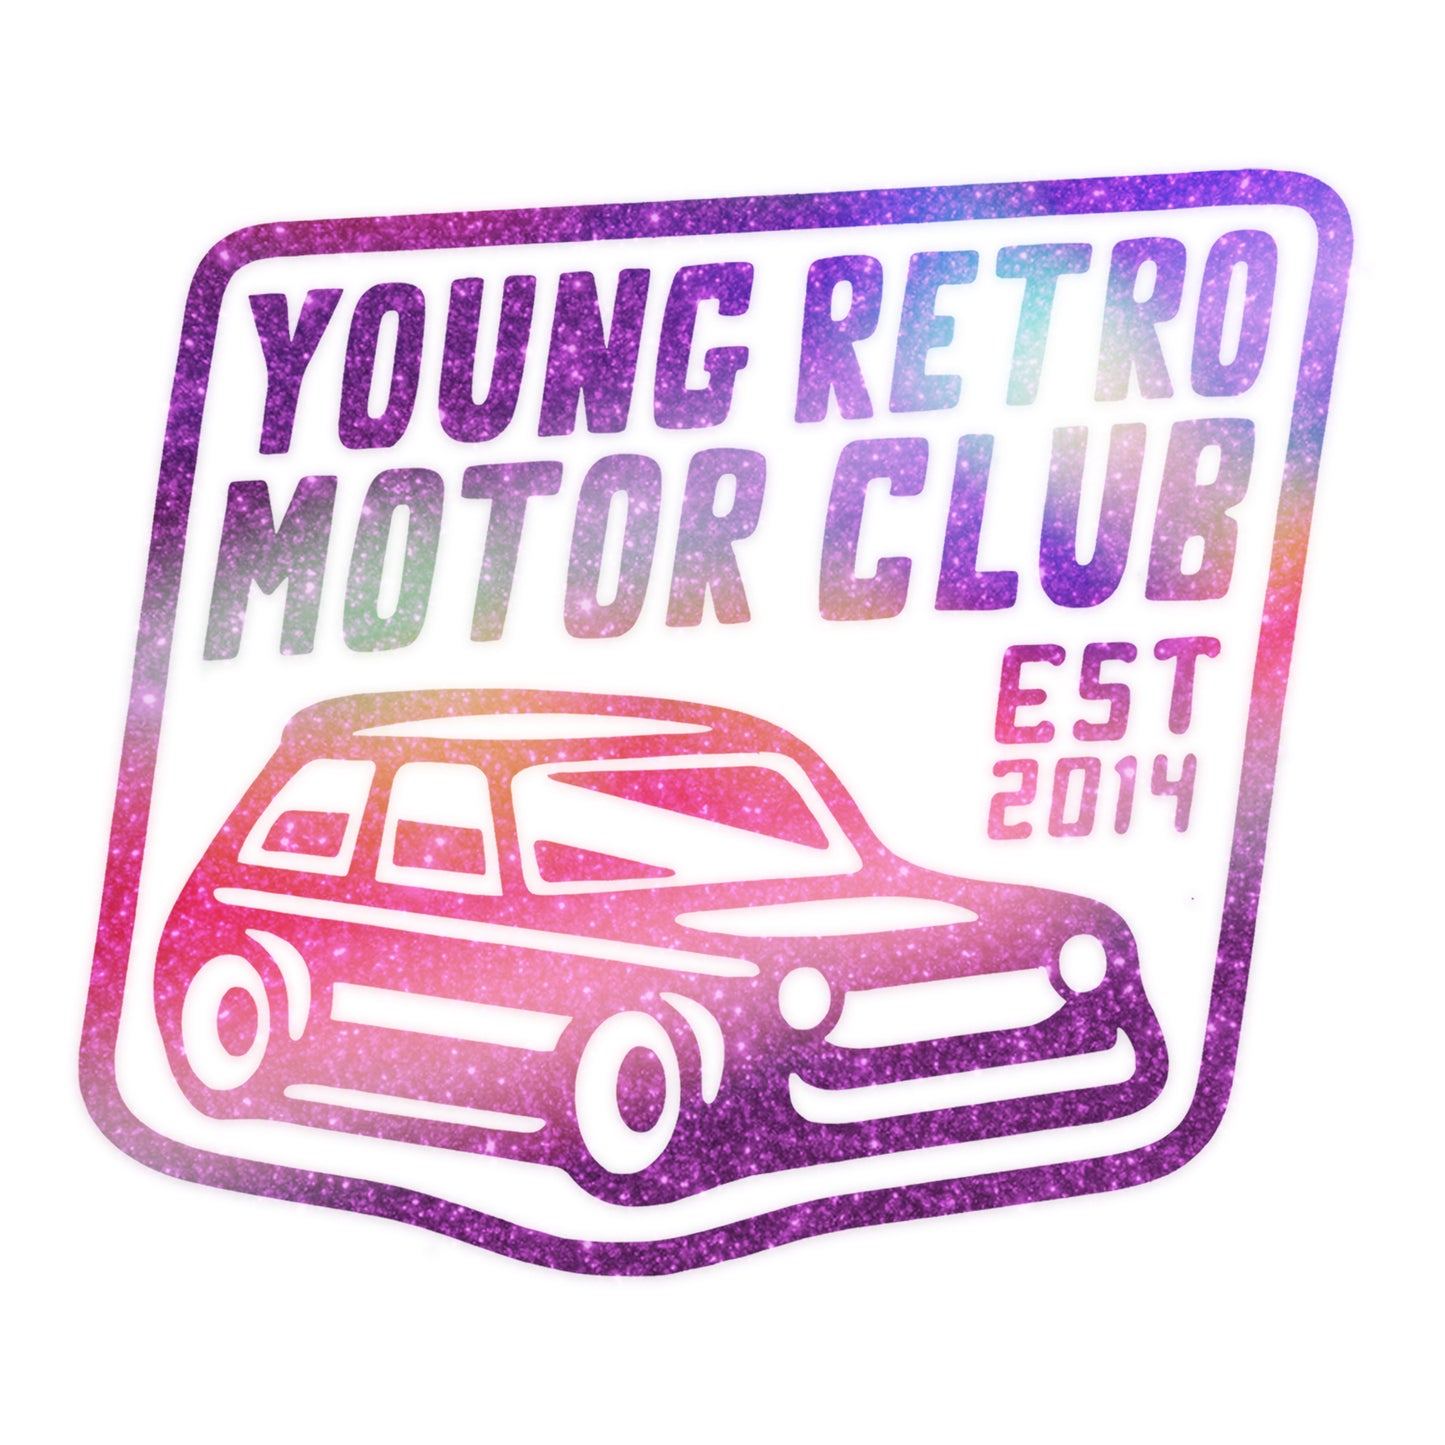 YRMC Logo Sticker (Vinyl)